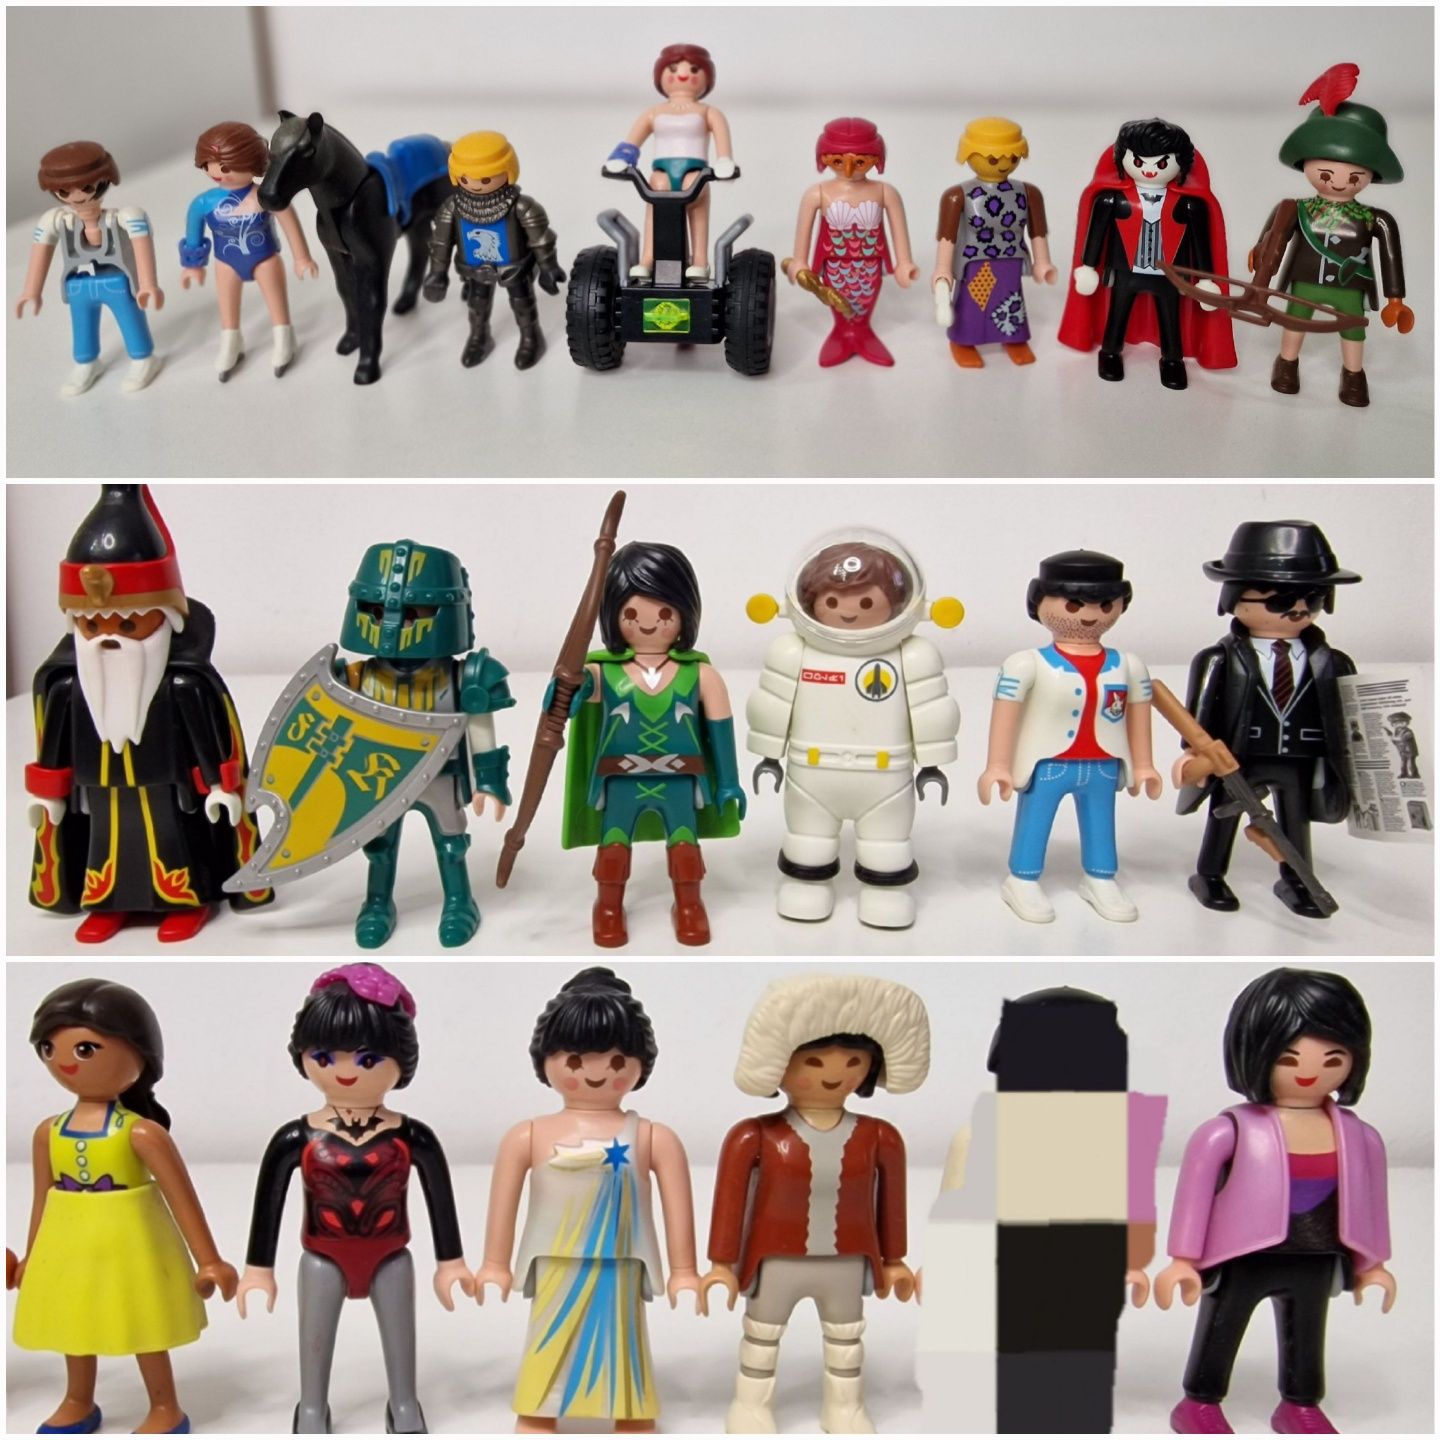 Peste 165 de figurine Playmobil